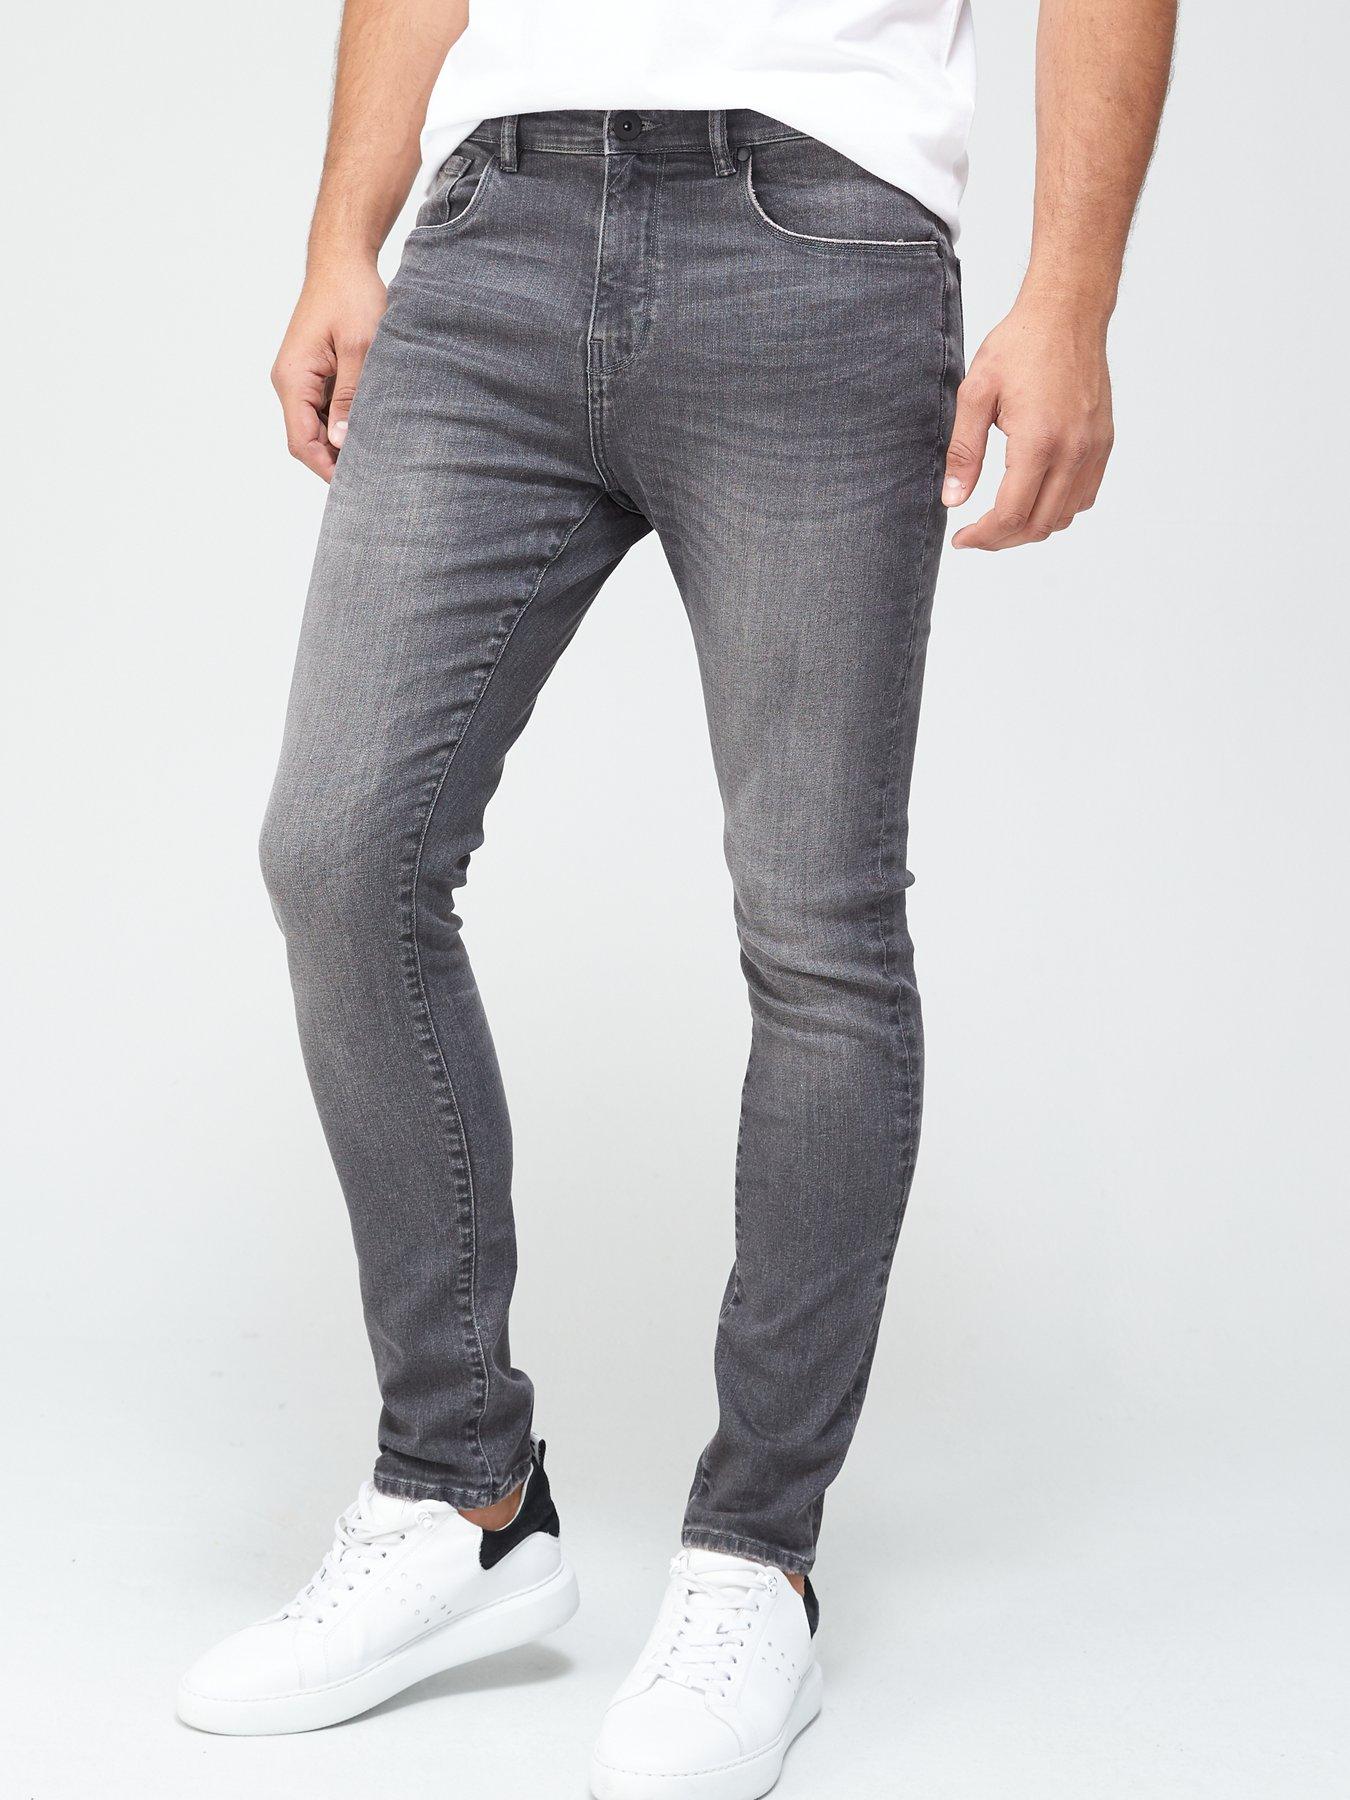 Very Man Skinny Jean with Stretch - Grey | very.co.uk